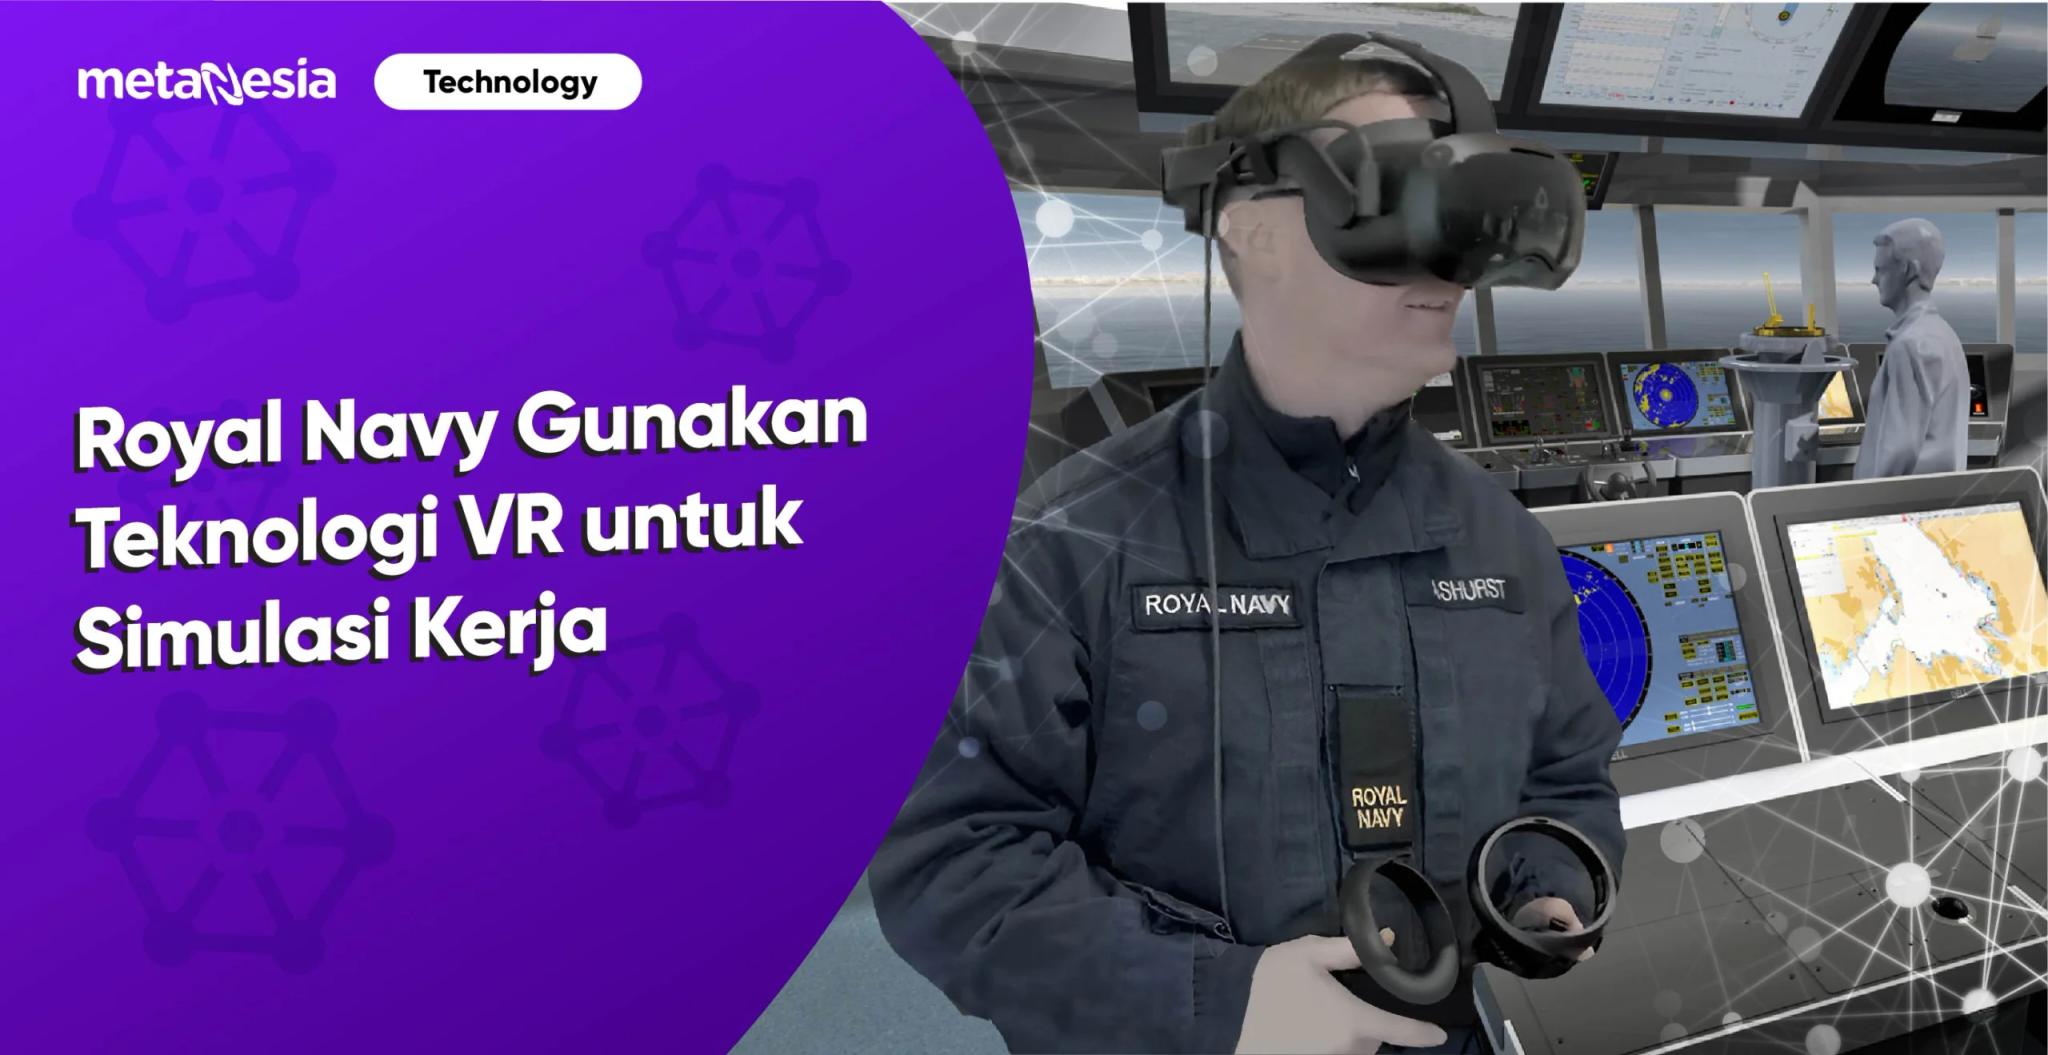 Royal Navy, Gunakan Teknologi VR Imersif untuk Simulasi Kerja